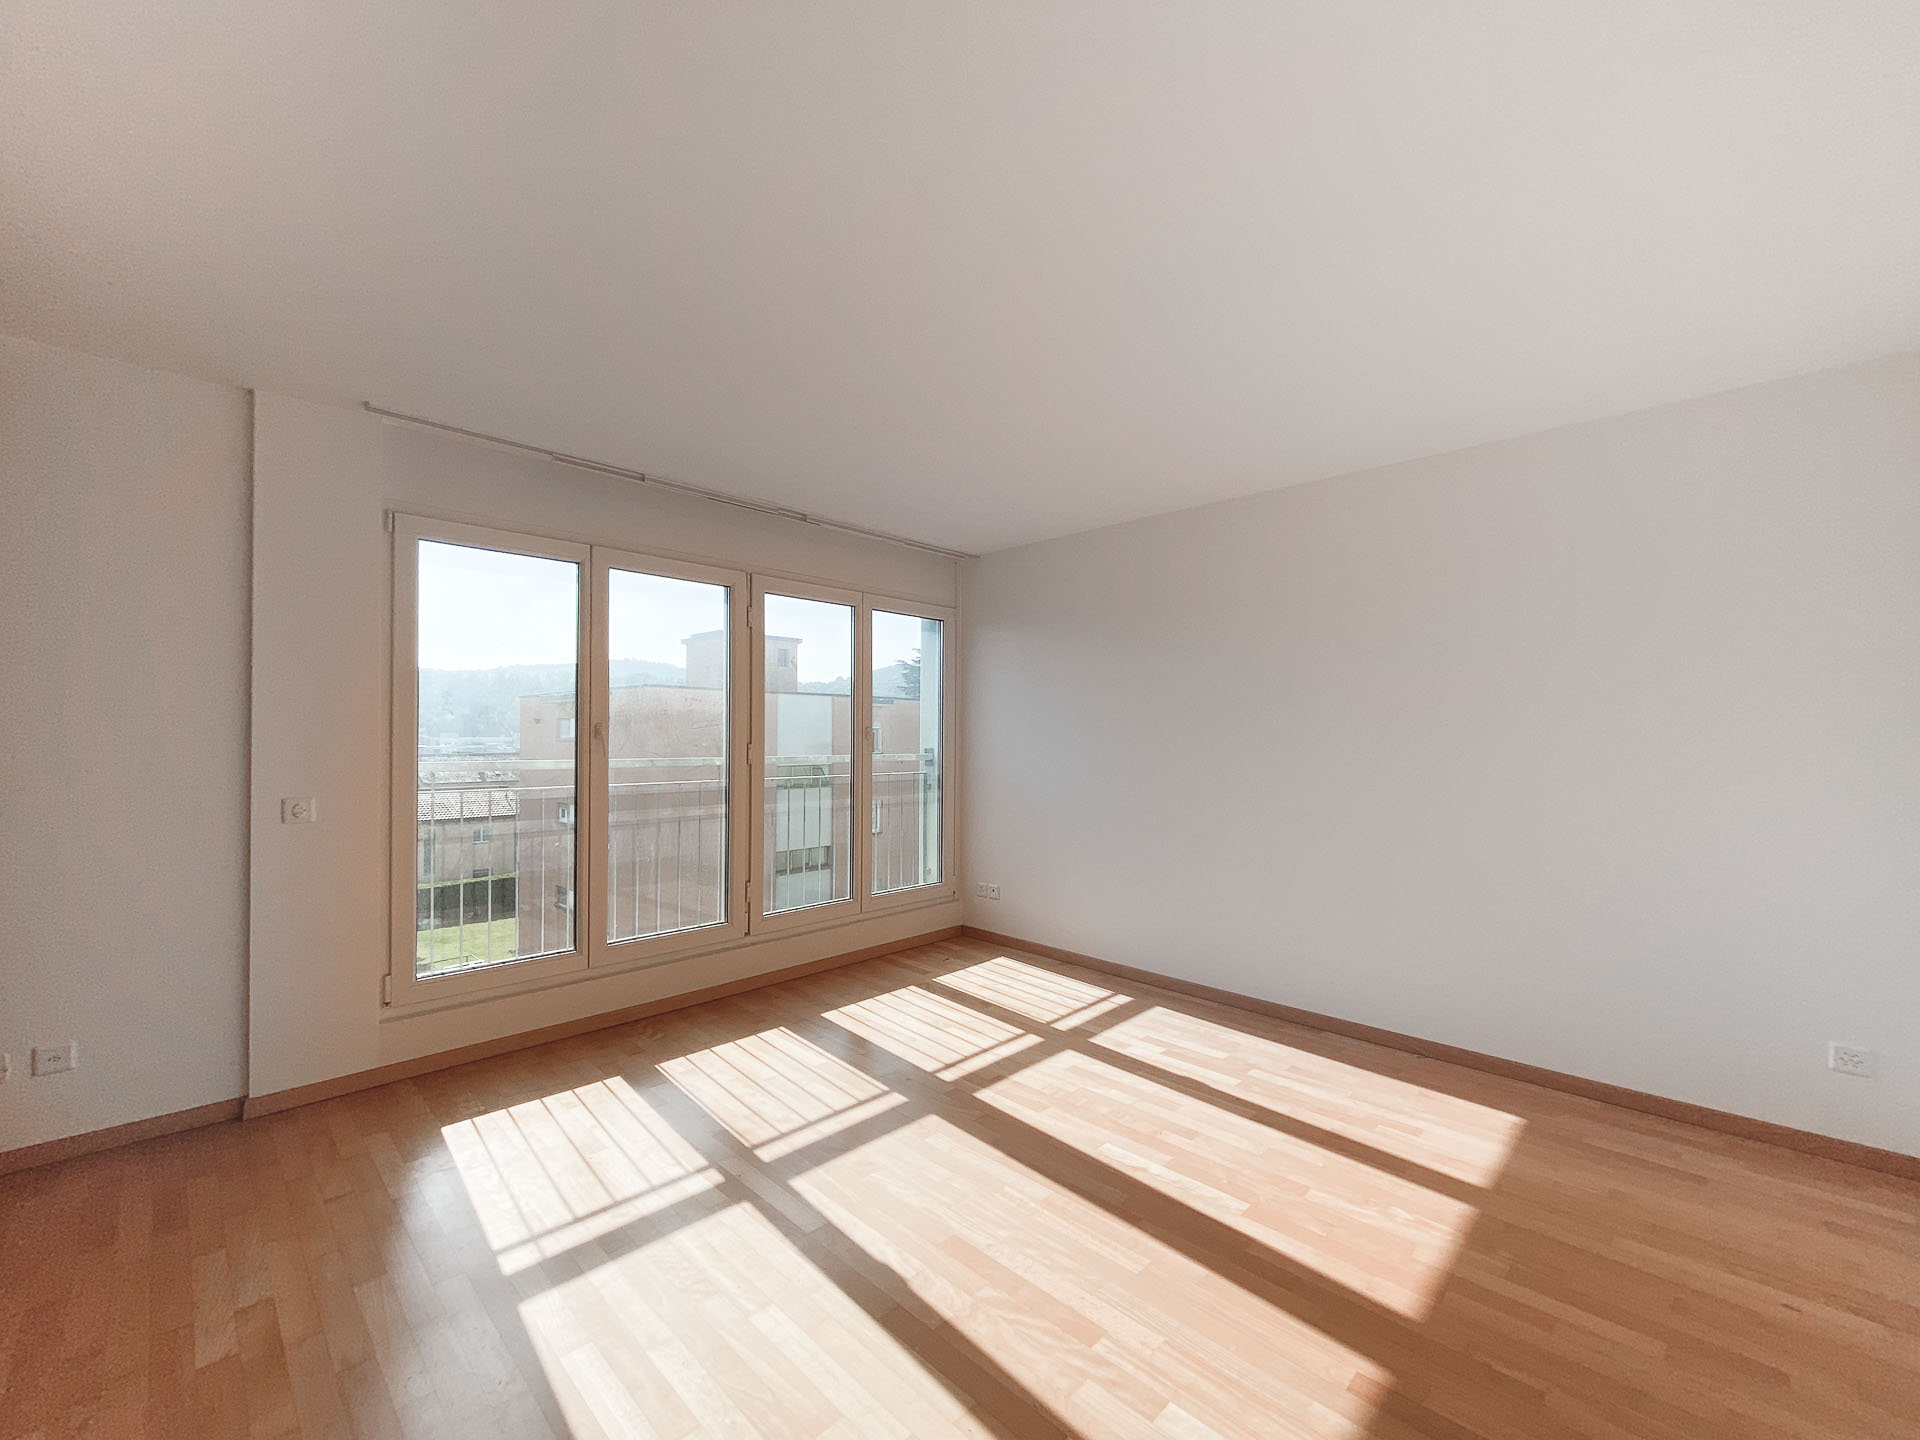 4,5-Zimmer-Duplex-Wohnung mit Dachterrasse in Stabio zu verkaufen